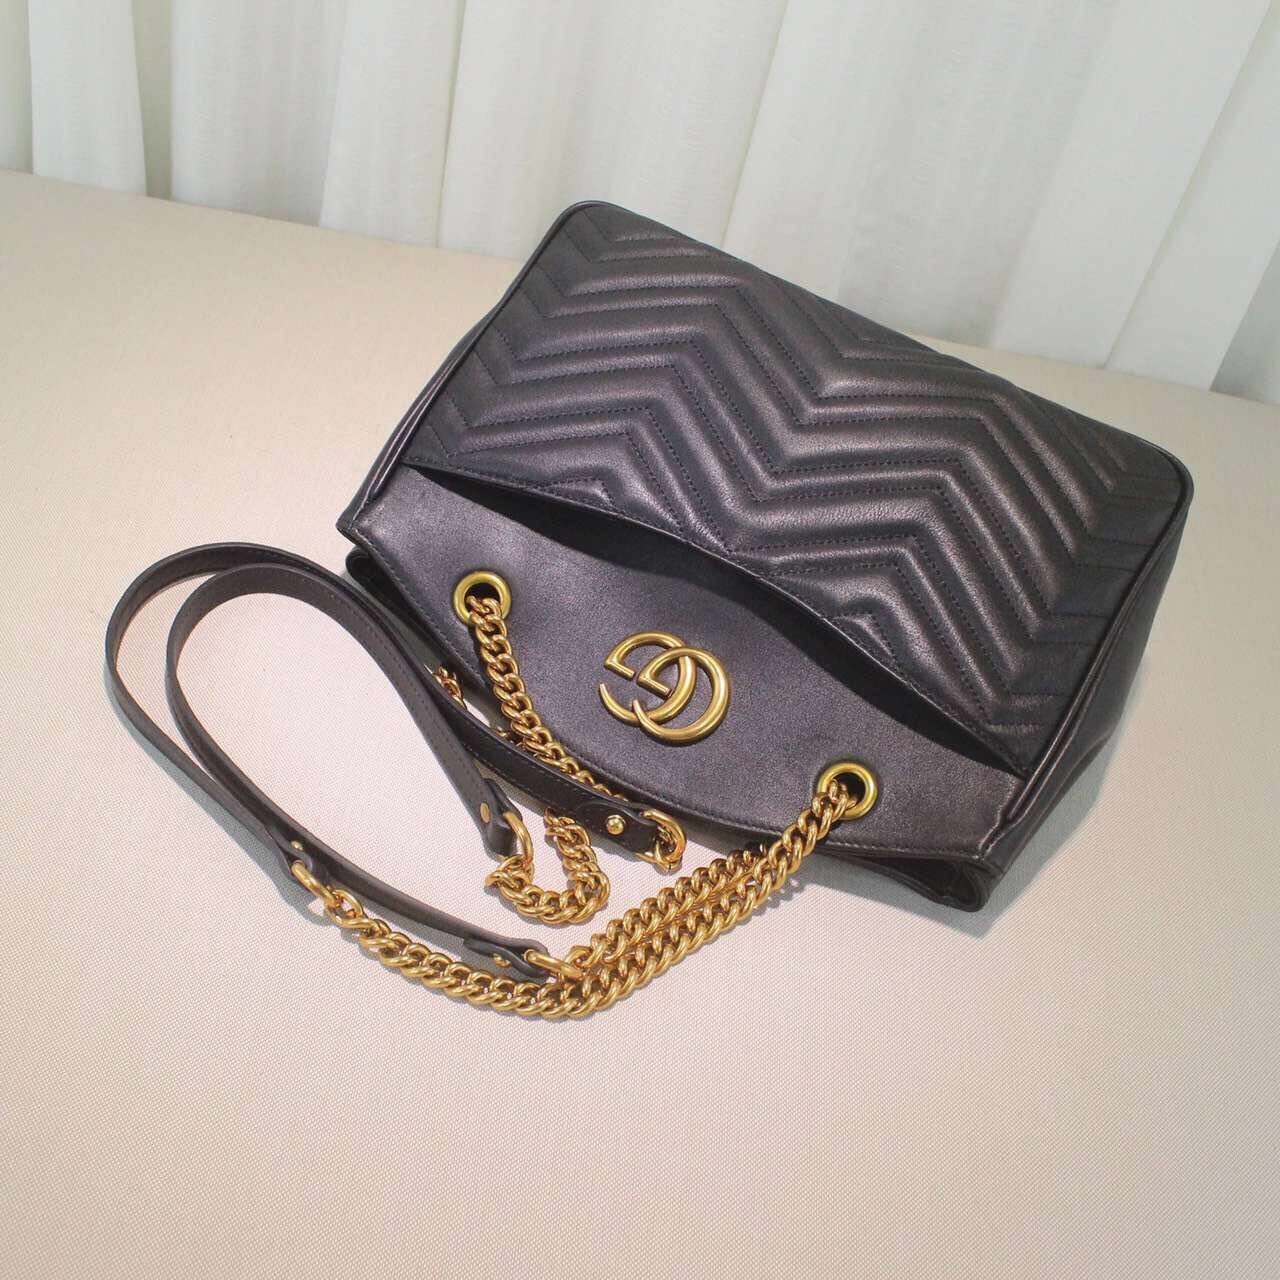 Gucci handbag 20160906